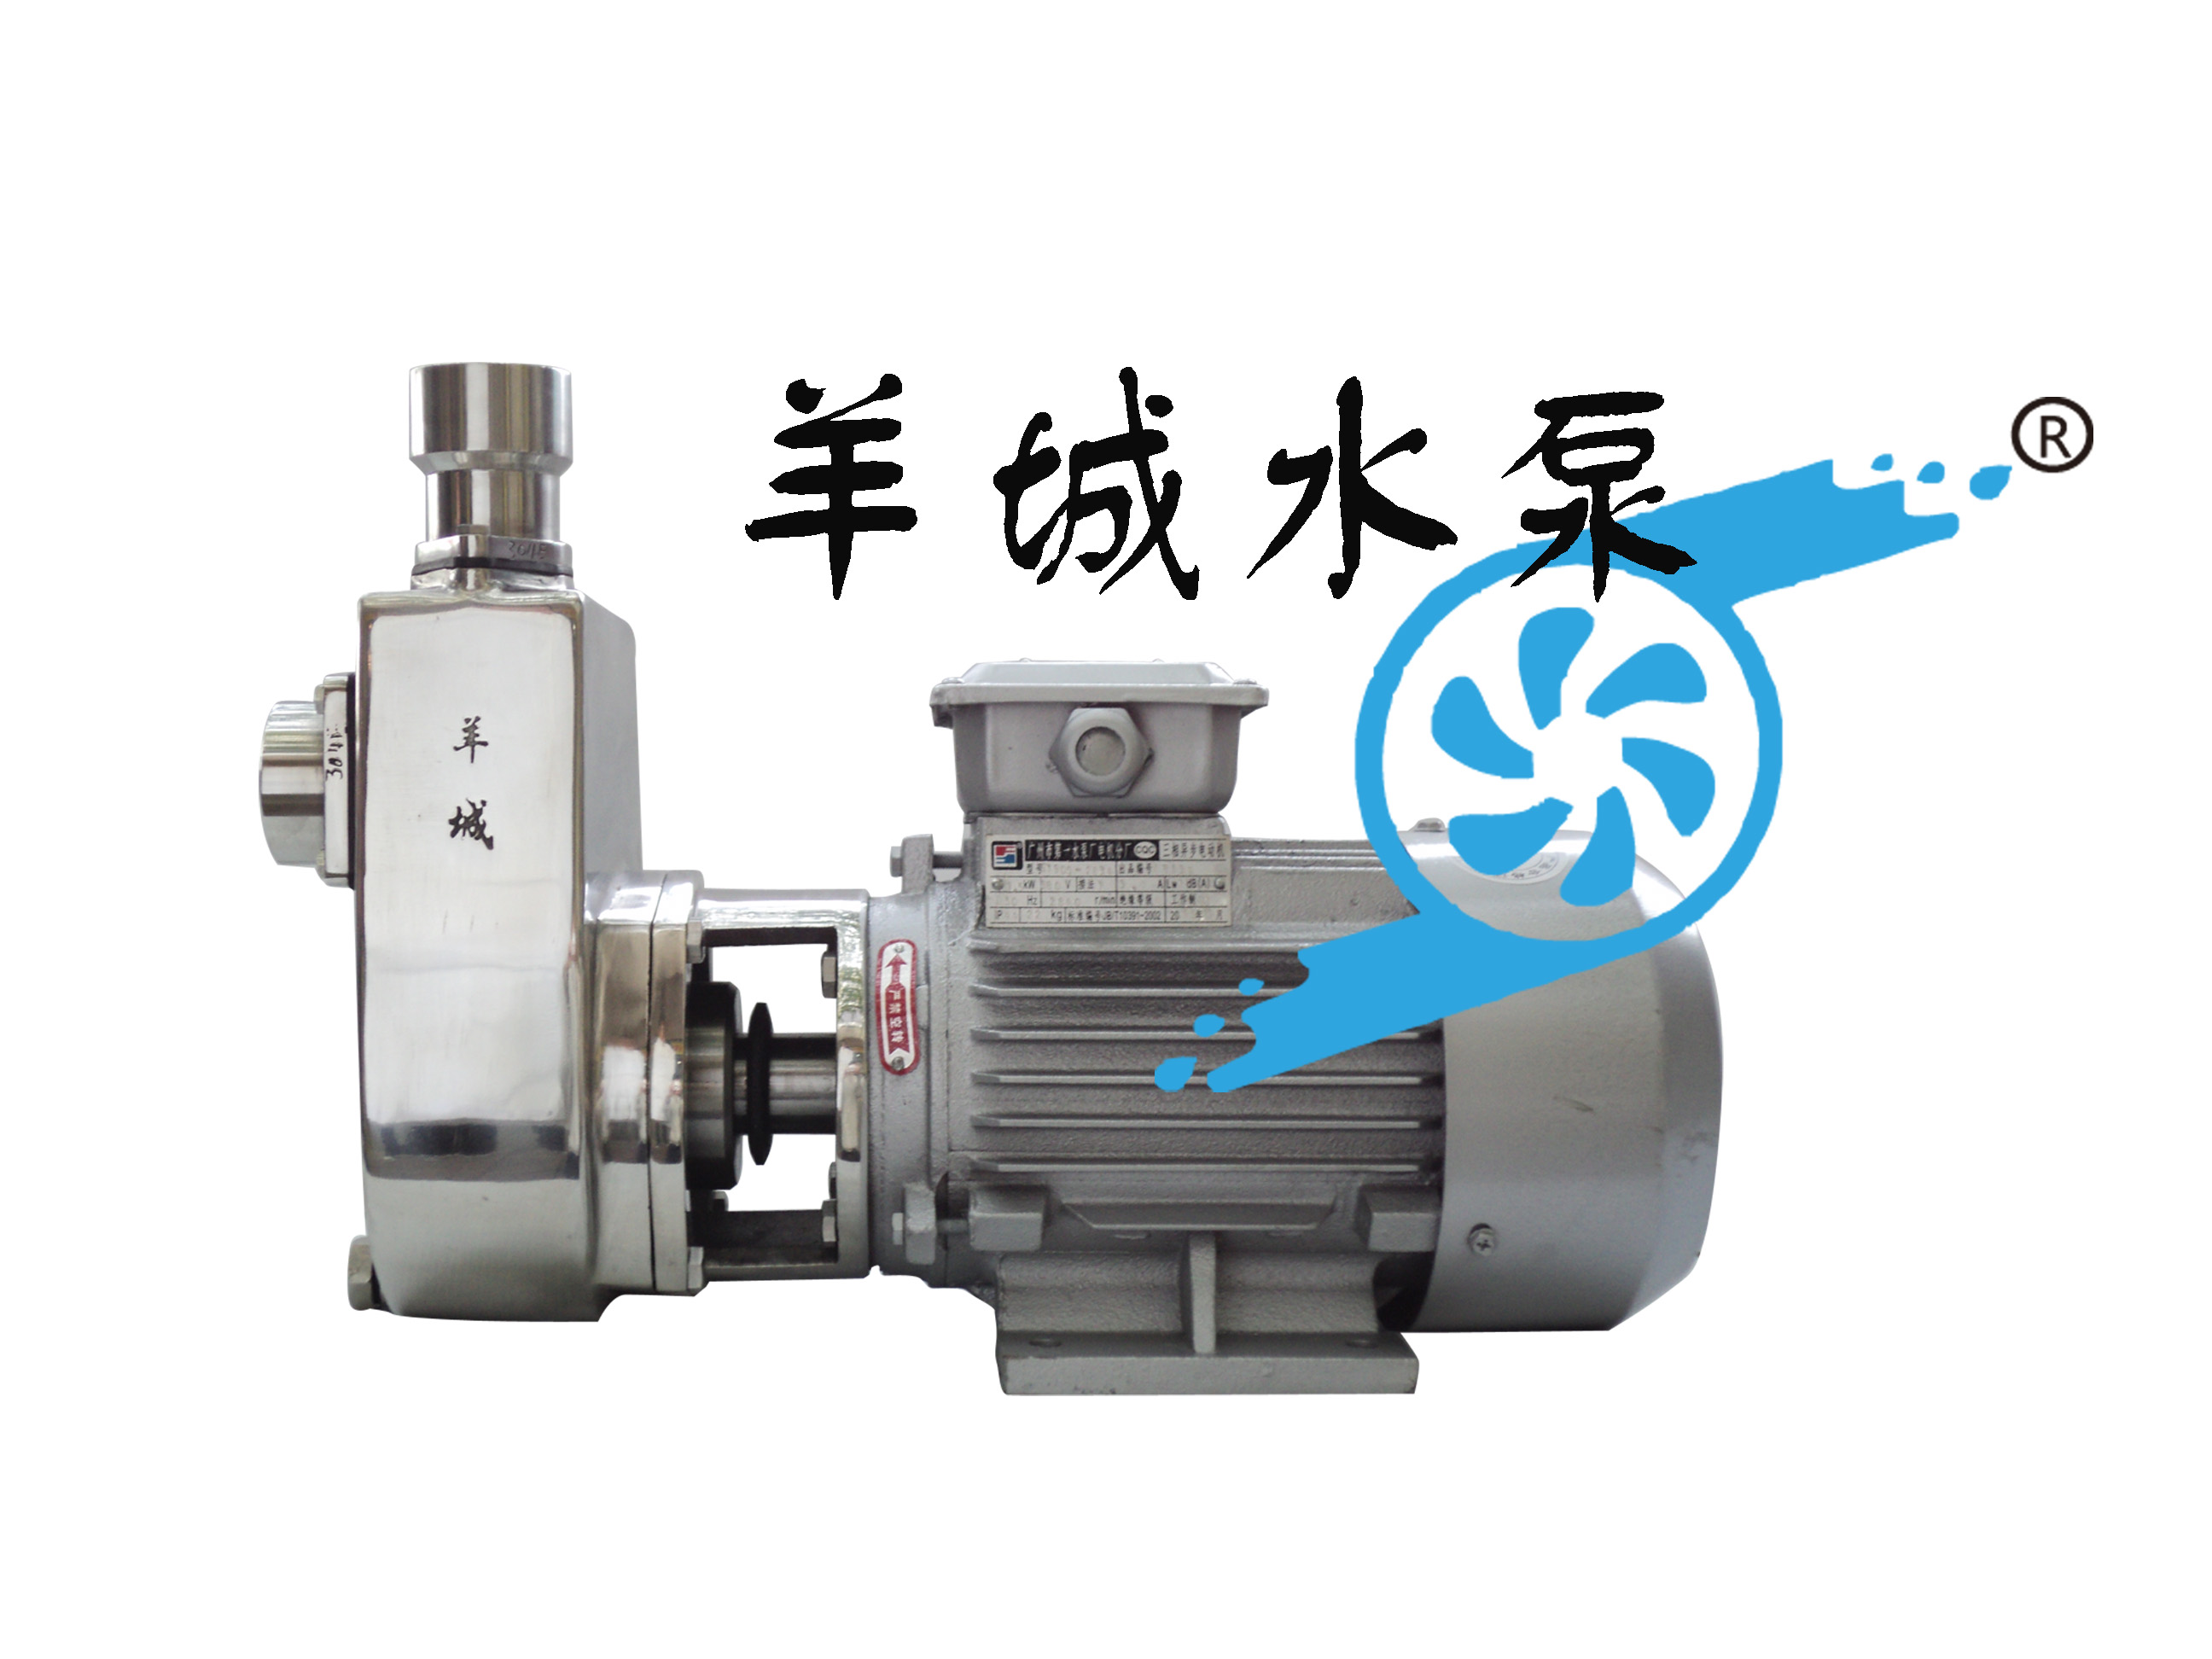 羊城水泵分公司|25FX-8|广州不锈钢自吸泵|东莞水泵厂|广东自吸泵价格